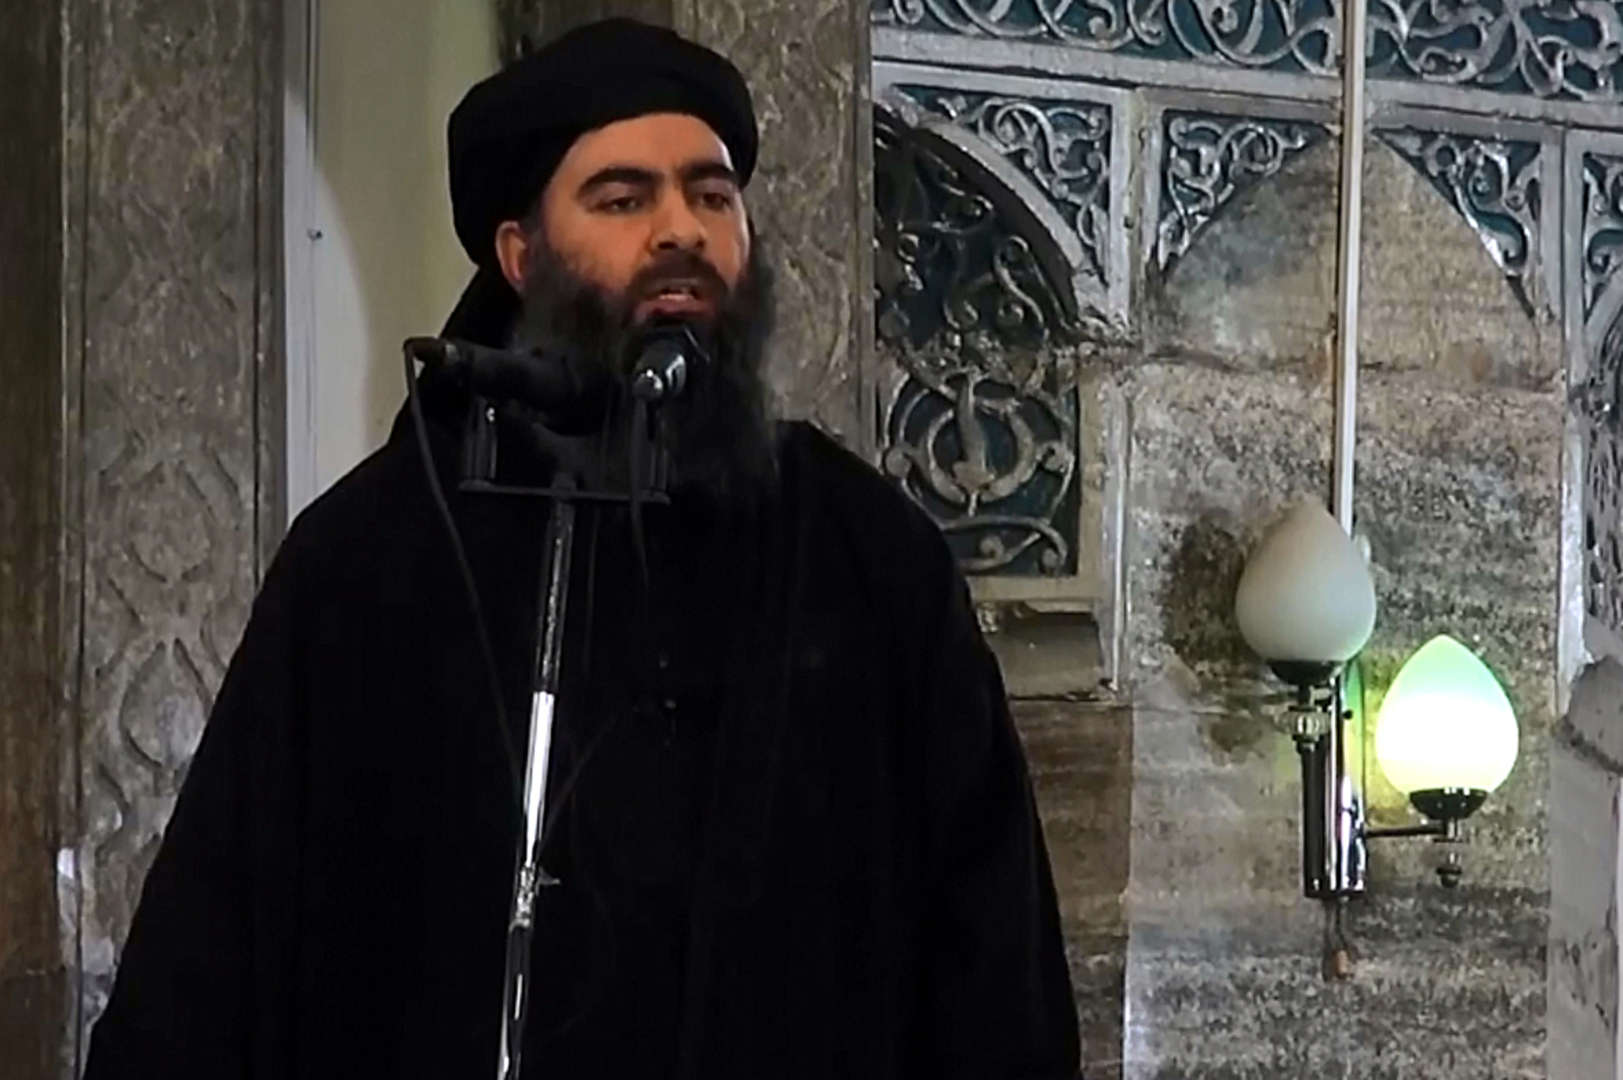 Diapositiva 19 di 25: Sempre nel 2019, nella notte tra il 26 e il 27 ottobre, muore Abu Bakr Al Baghdadi nel nord-ovest della Siria. Era il numero 1 dell'Isis all'epoca, il califfato islamico formatosi tra l'Iraq e la Siria e considerato la nuova base del terrorismo antioccidentale, ricercato